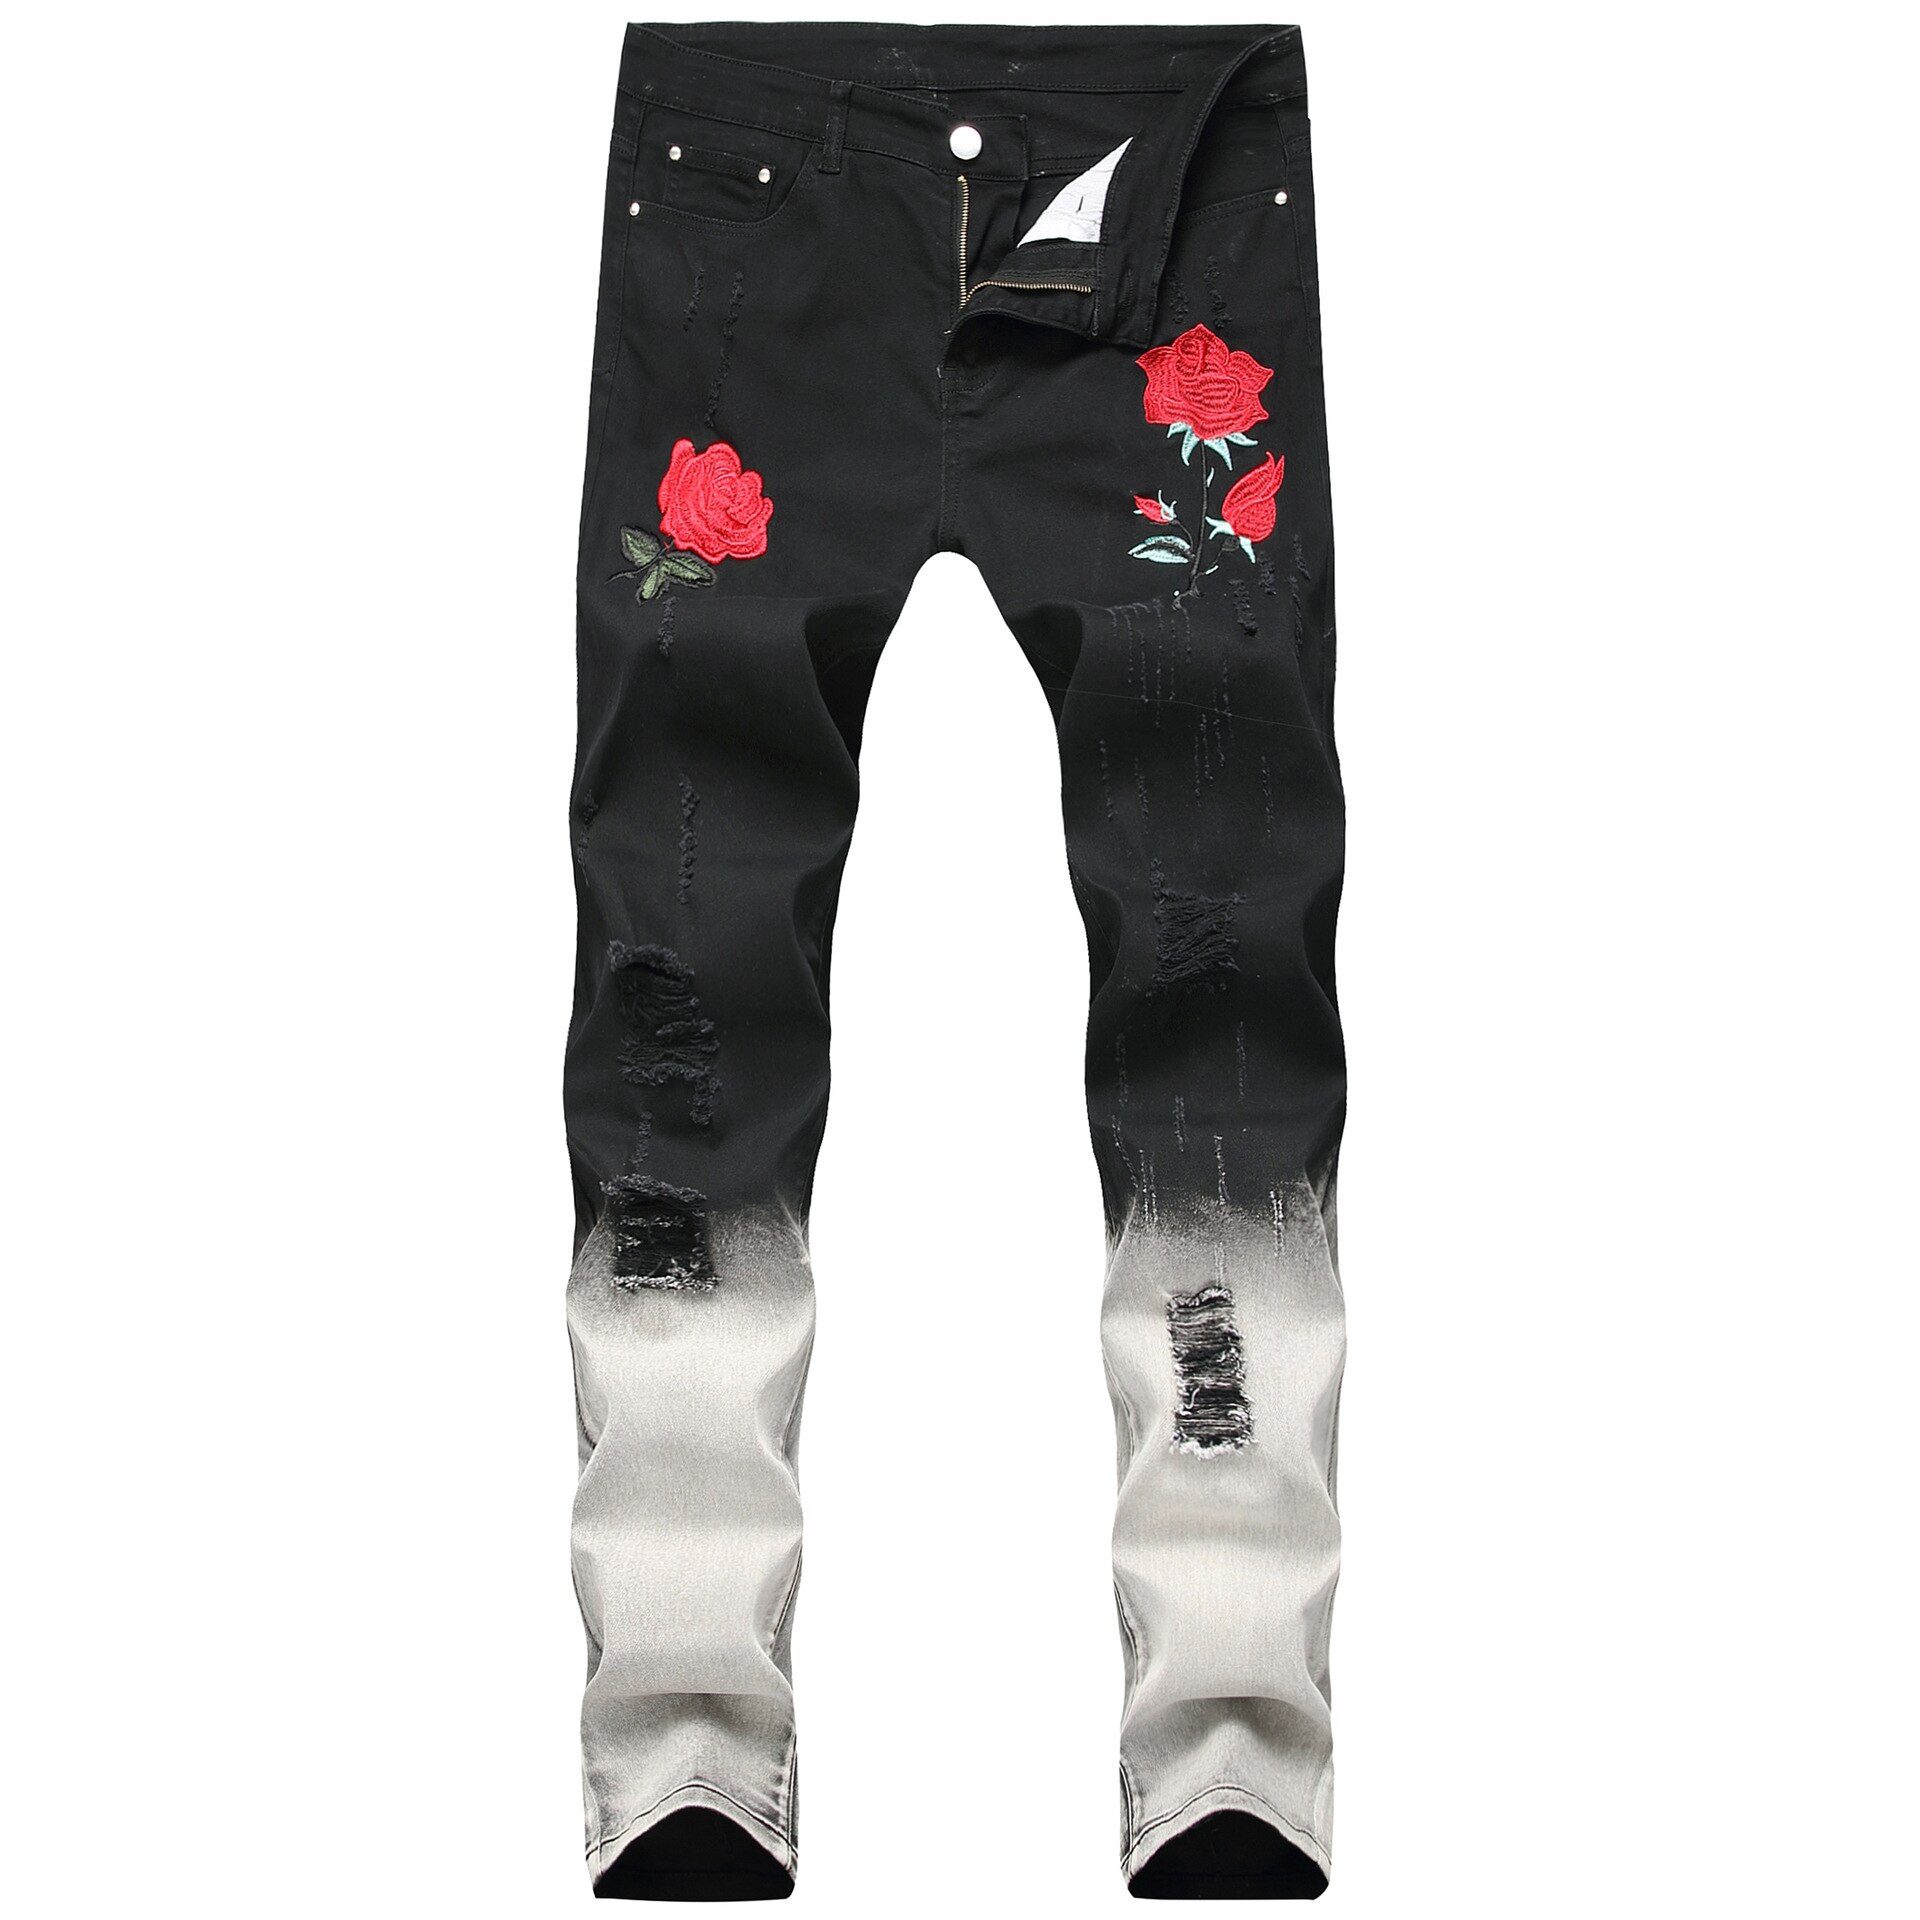 Sort hvid patchwork rippede mænd jeans broderi med blomster rose broderet mænds denim jeans stretch skinny slanke jean bukser